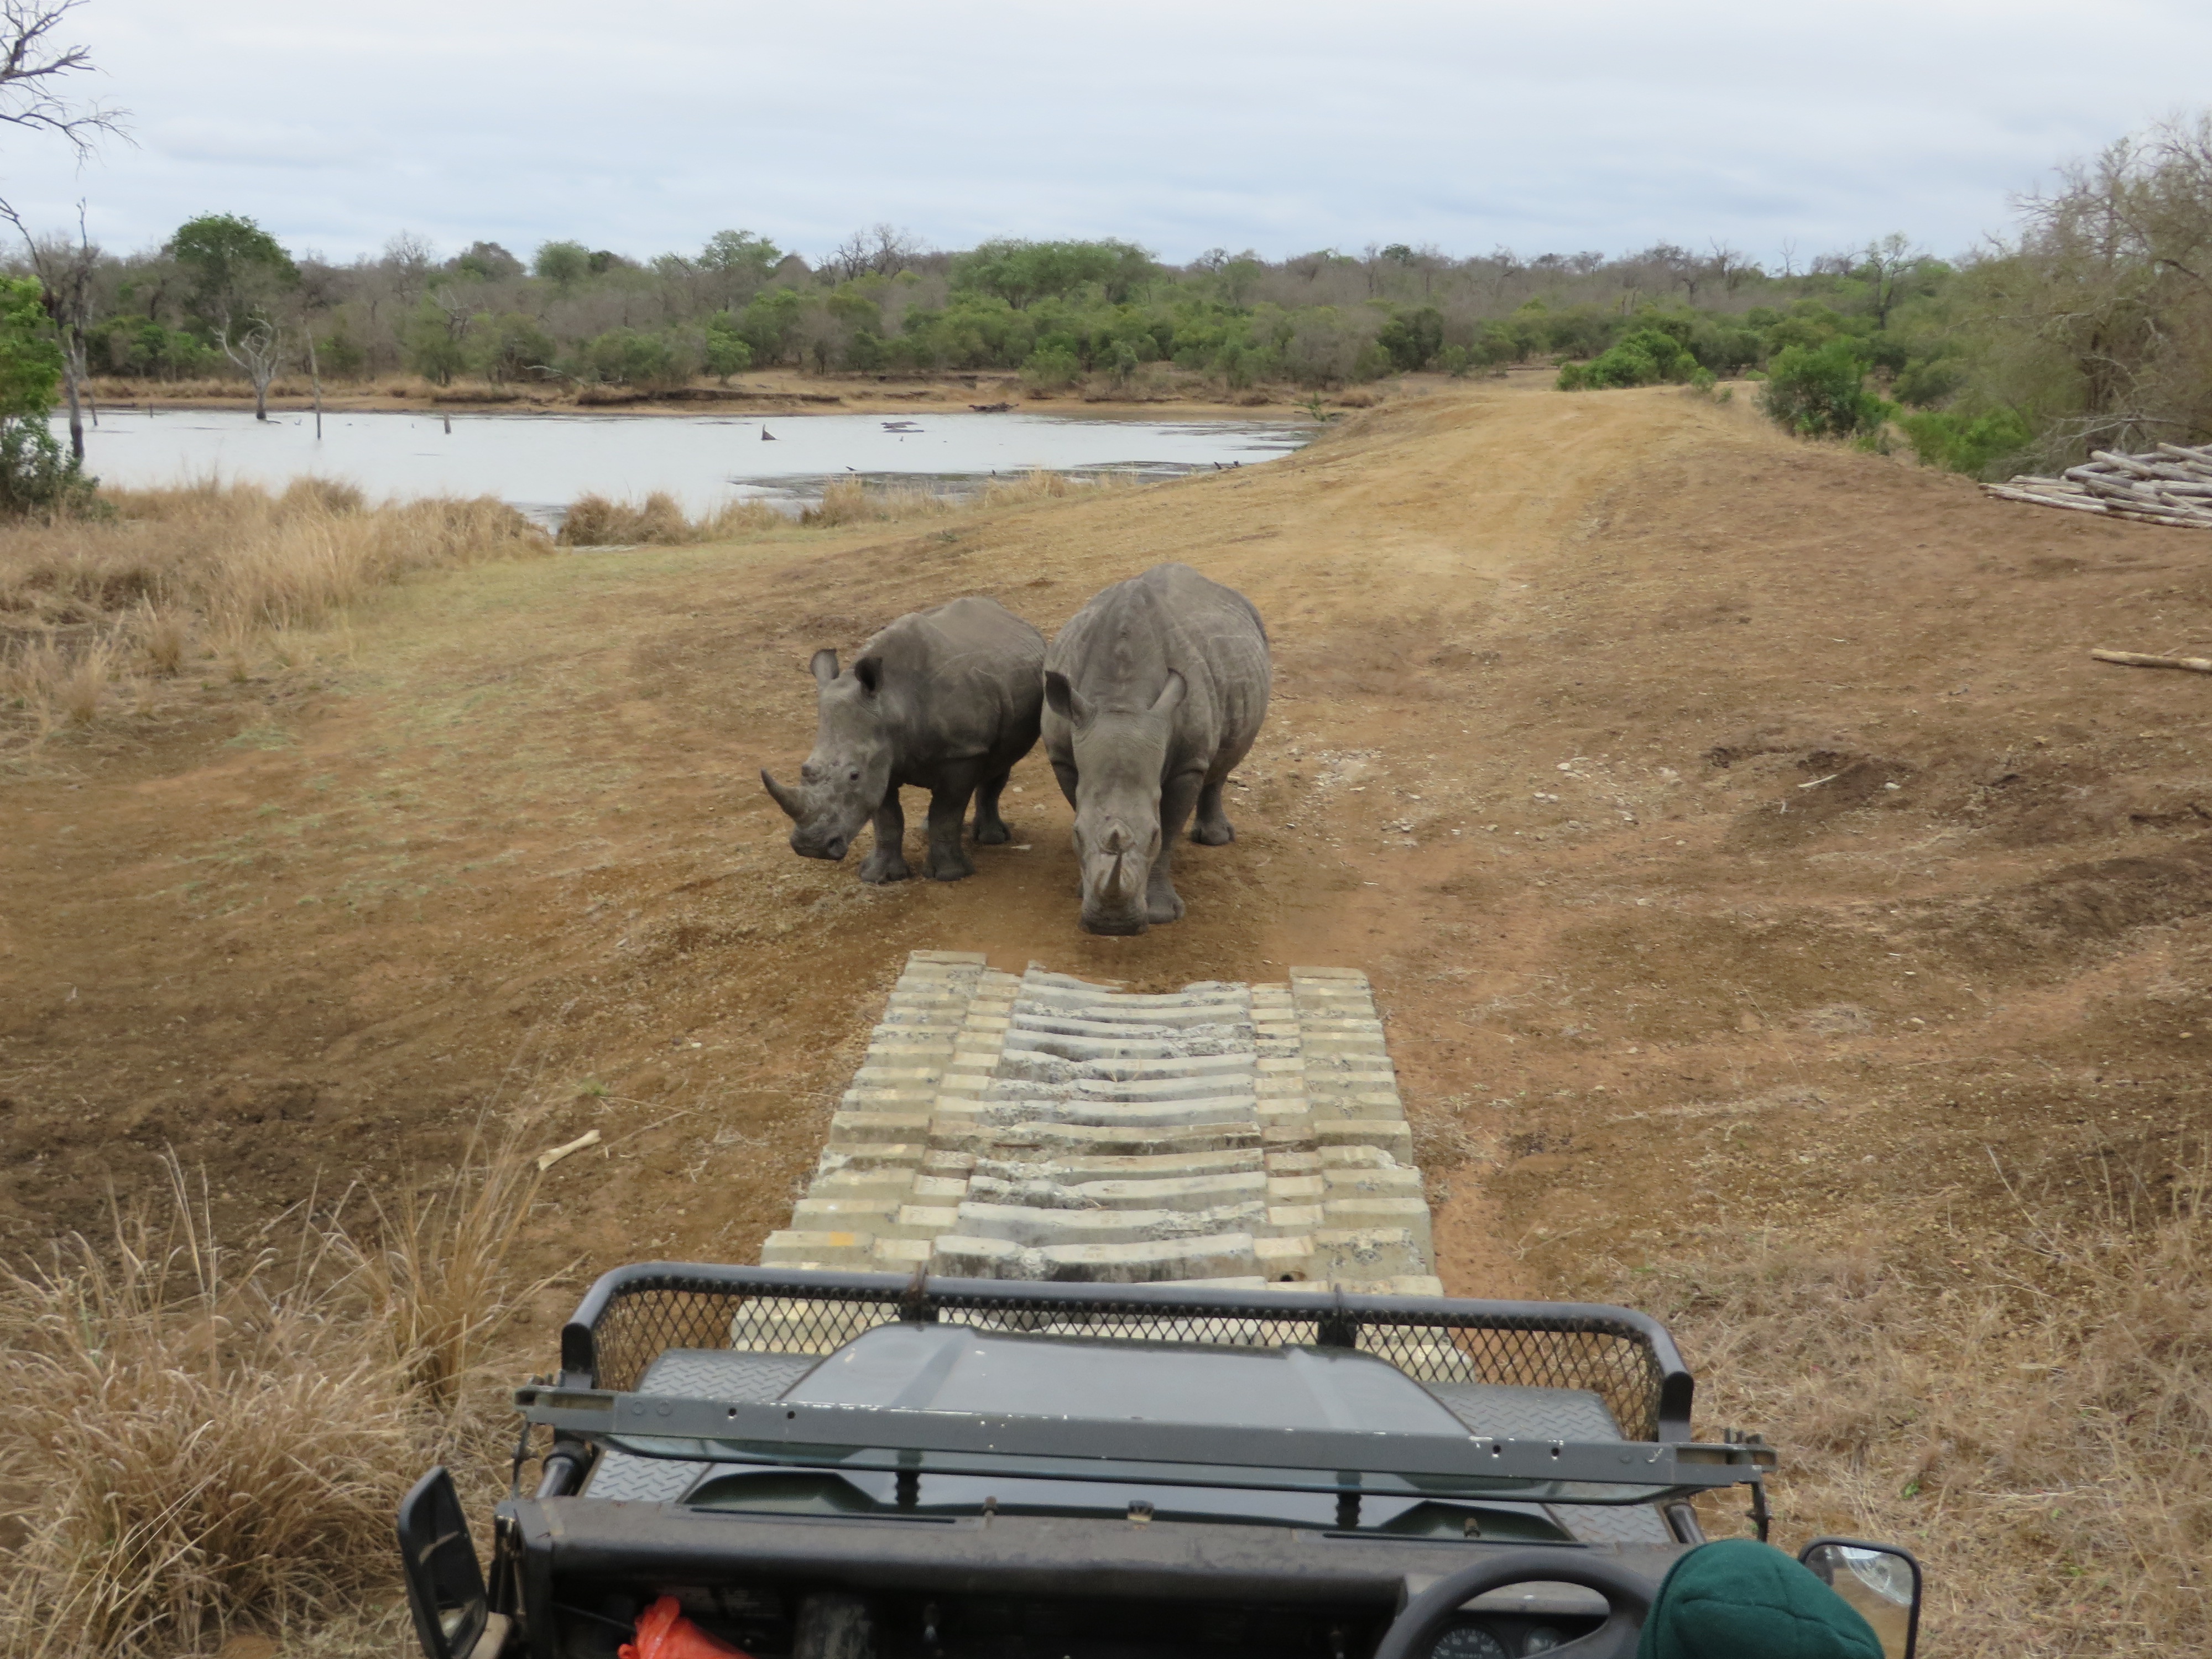 Rhino sighting while on safari.